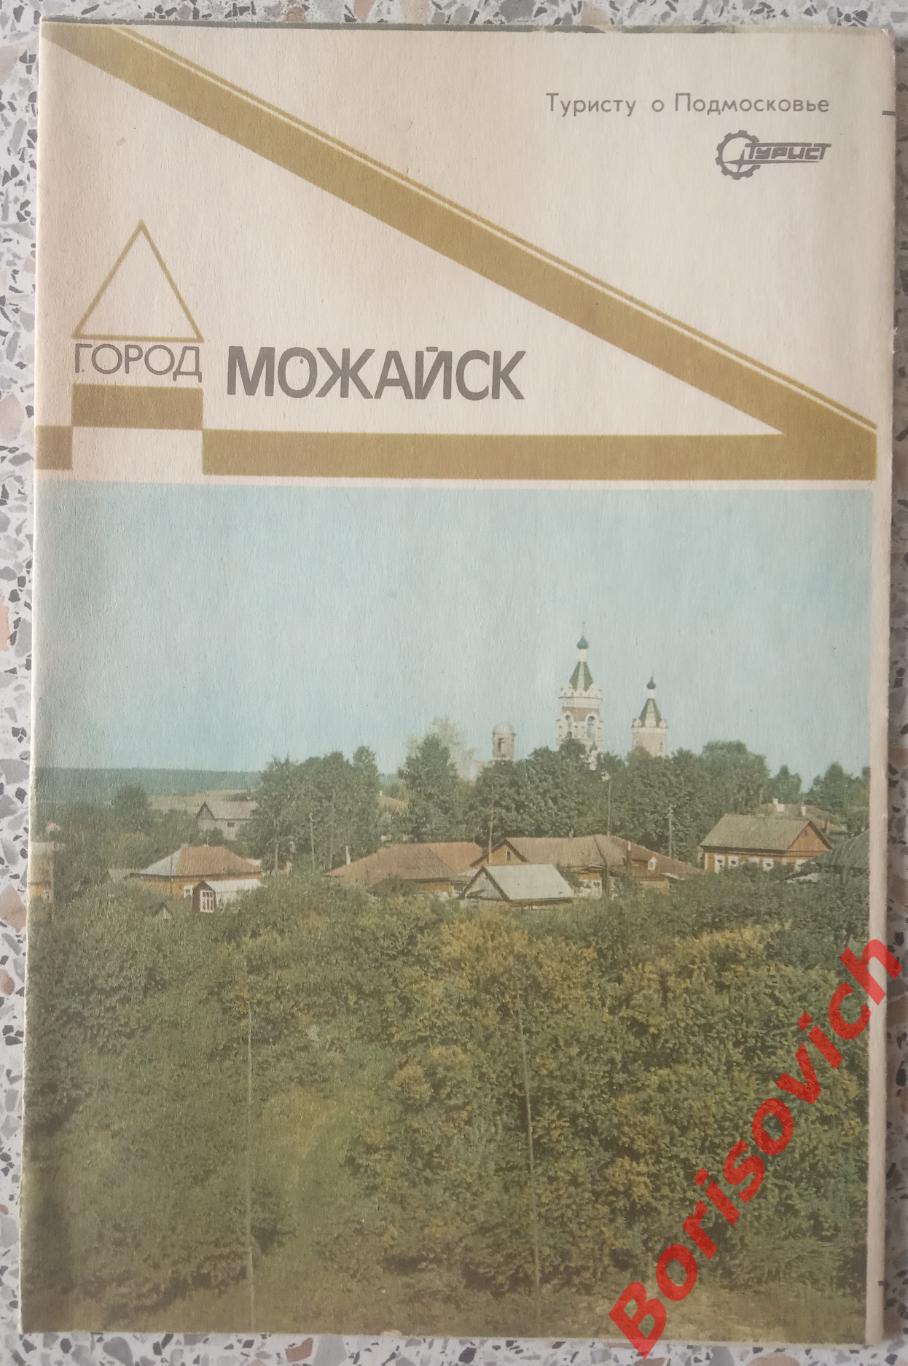 МОЖАЙСК Туристу о Подмосковье 1985